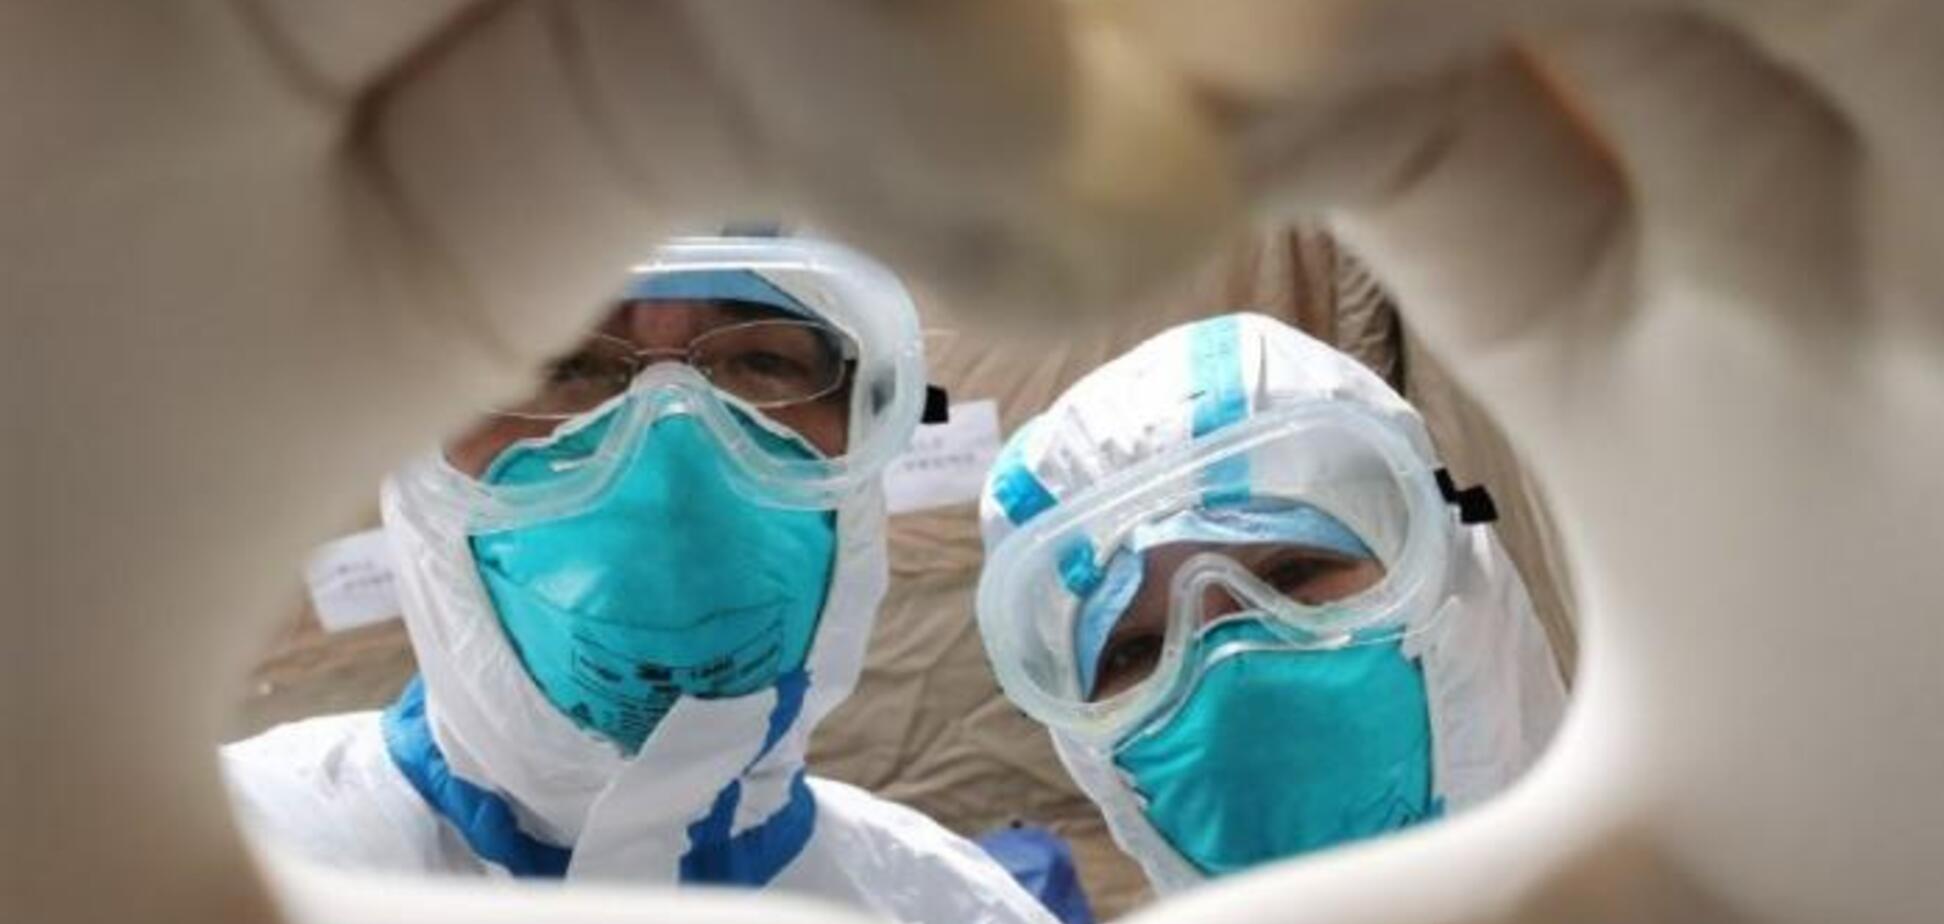 Рано радовались: 195 пациентов в Китае повторно заболели коронавирусом